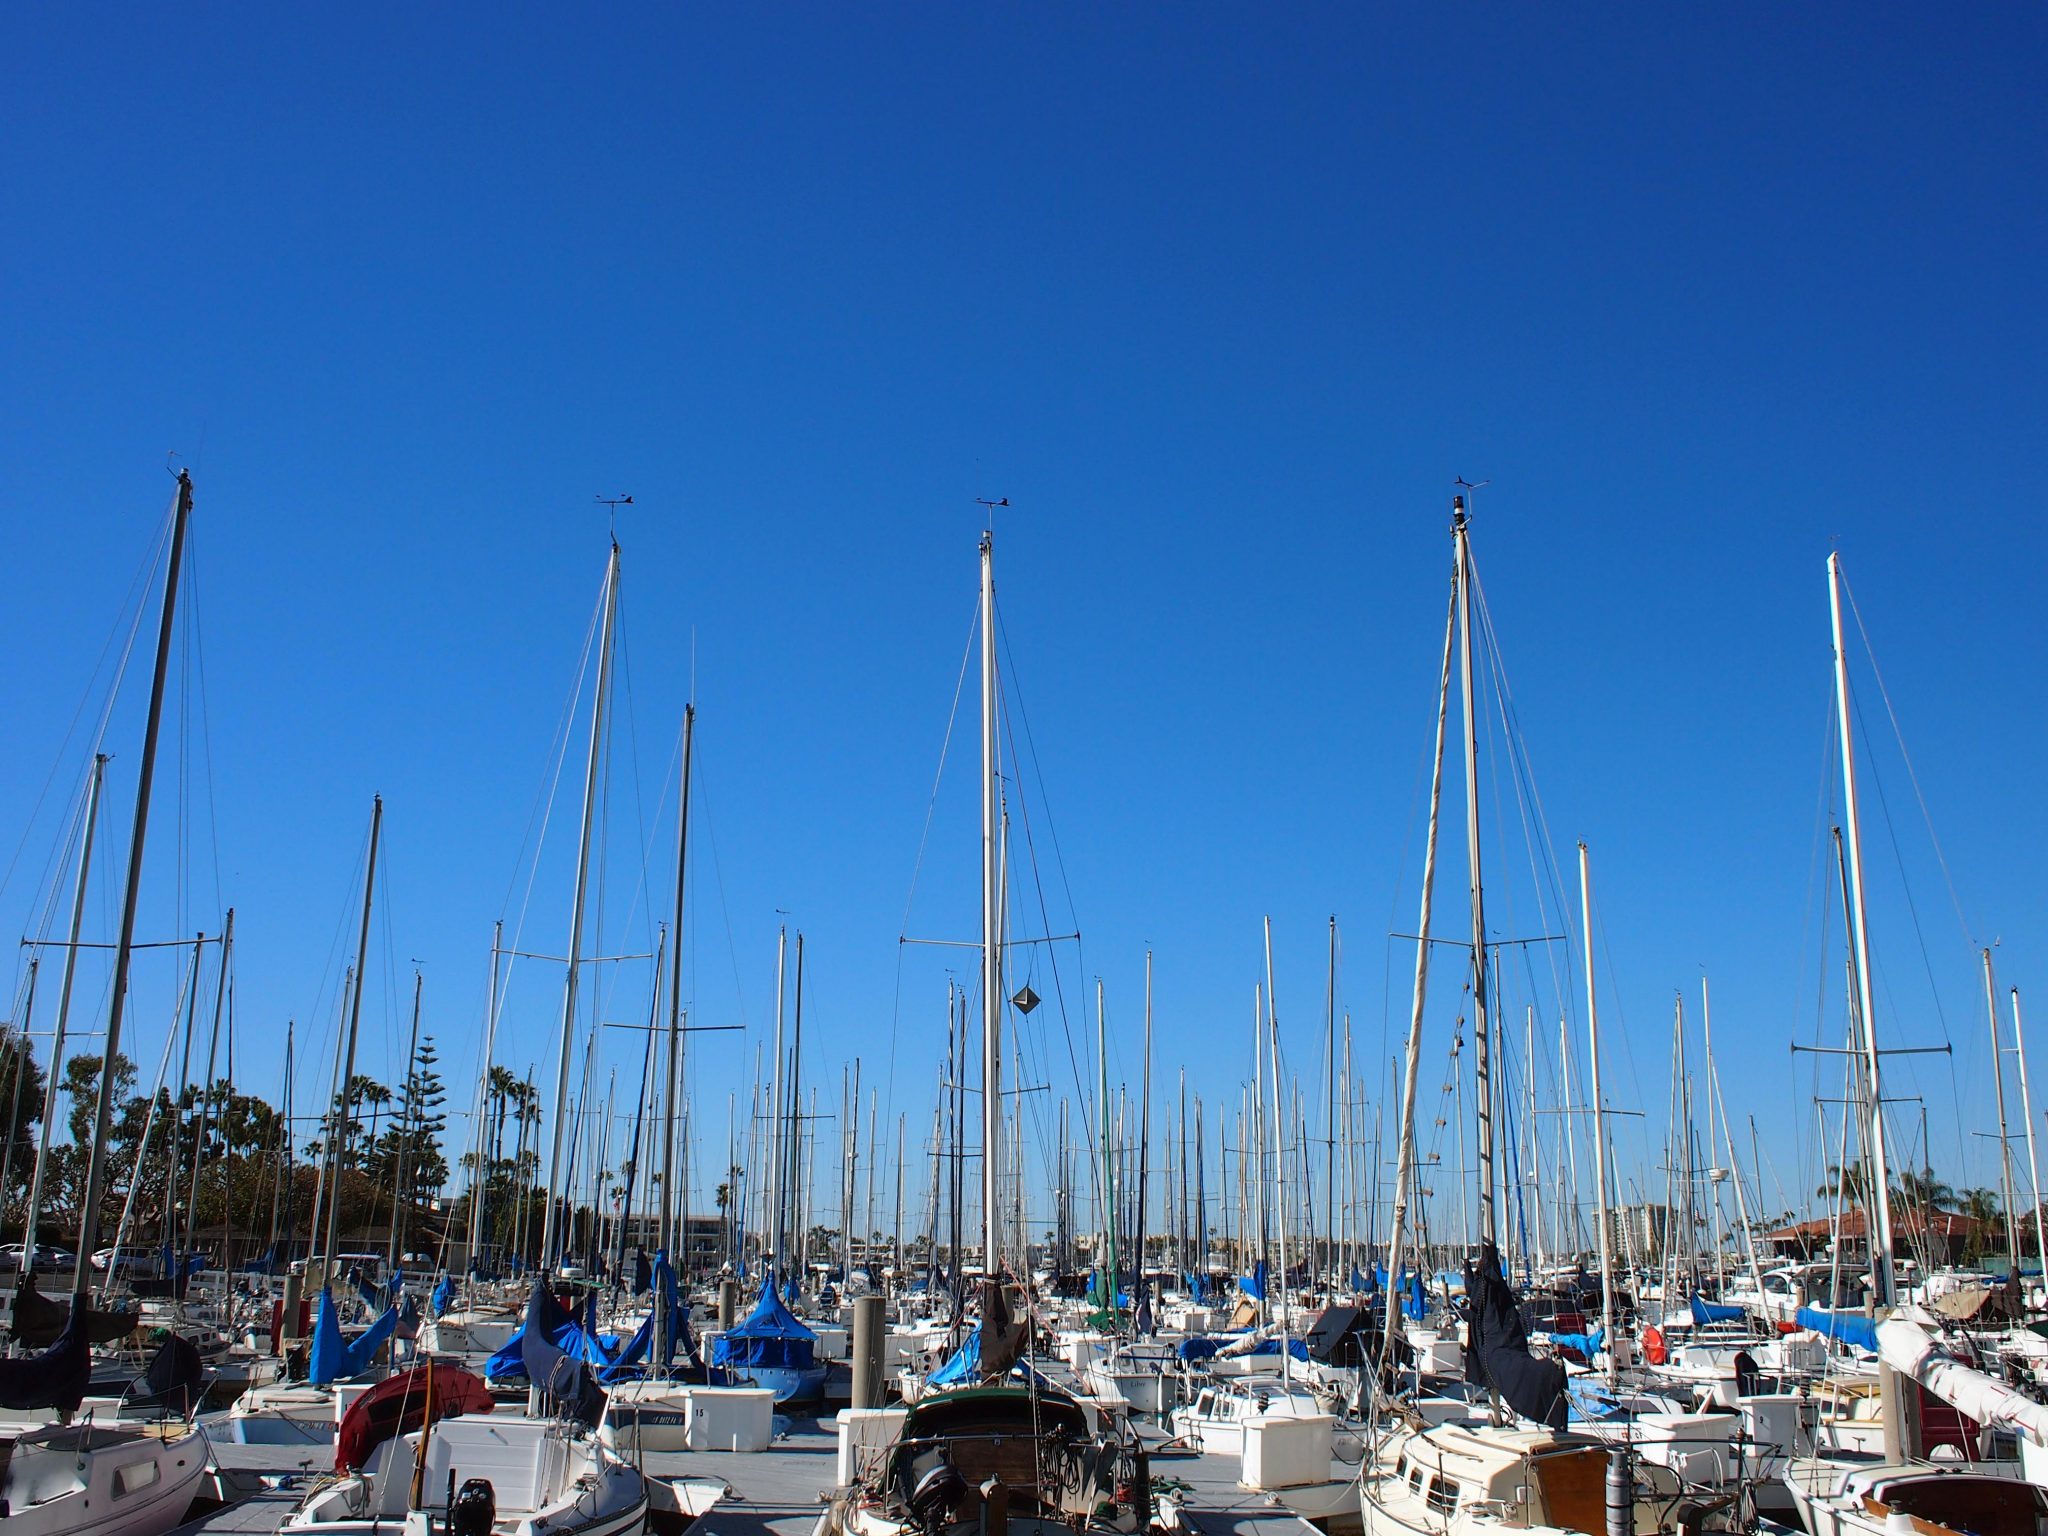 The yachts at Marina Del Rey.